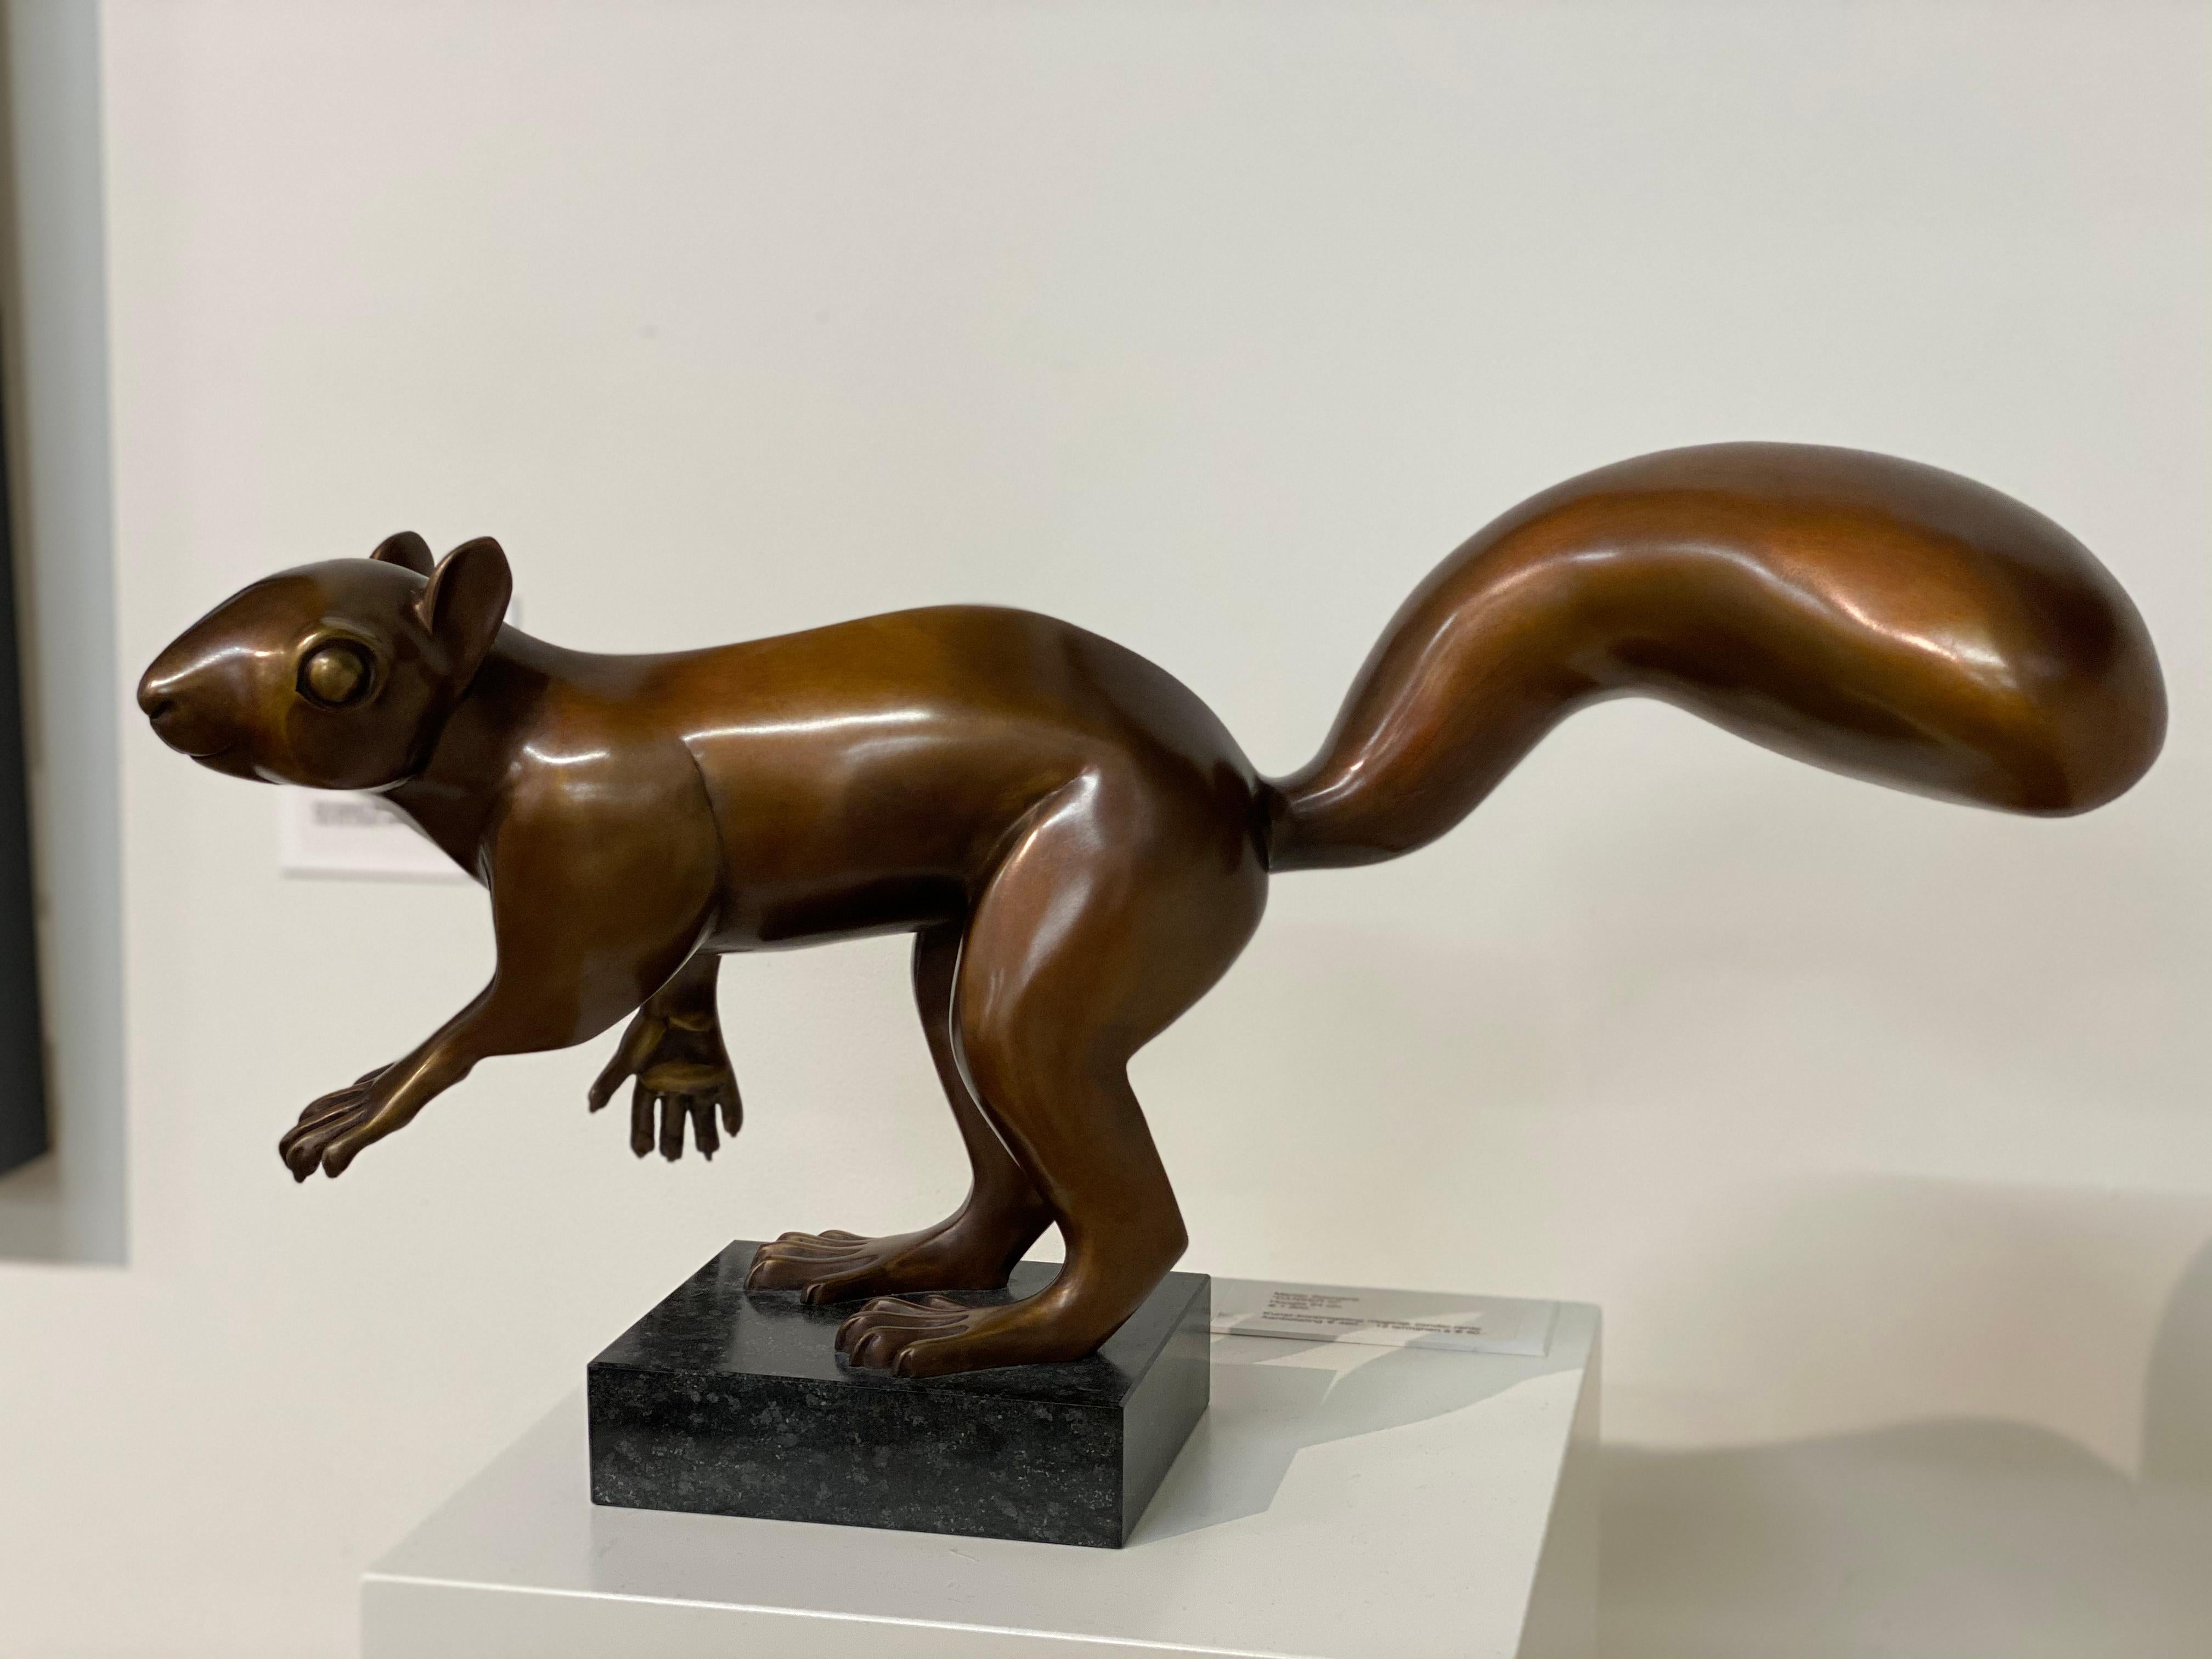 Dieses Eichhörnchen ist ein Werk des niederländischen Künstlers Frans van Straaten.

Van Straaten sollte als ein Künstler des Gleichgewichts bezeichnet werden, der immer auf der Suche nach Harmonie zwischen Kraft und Bewegung in Kombination mit dem